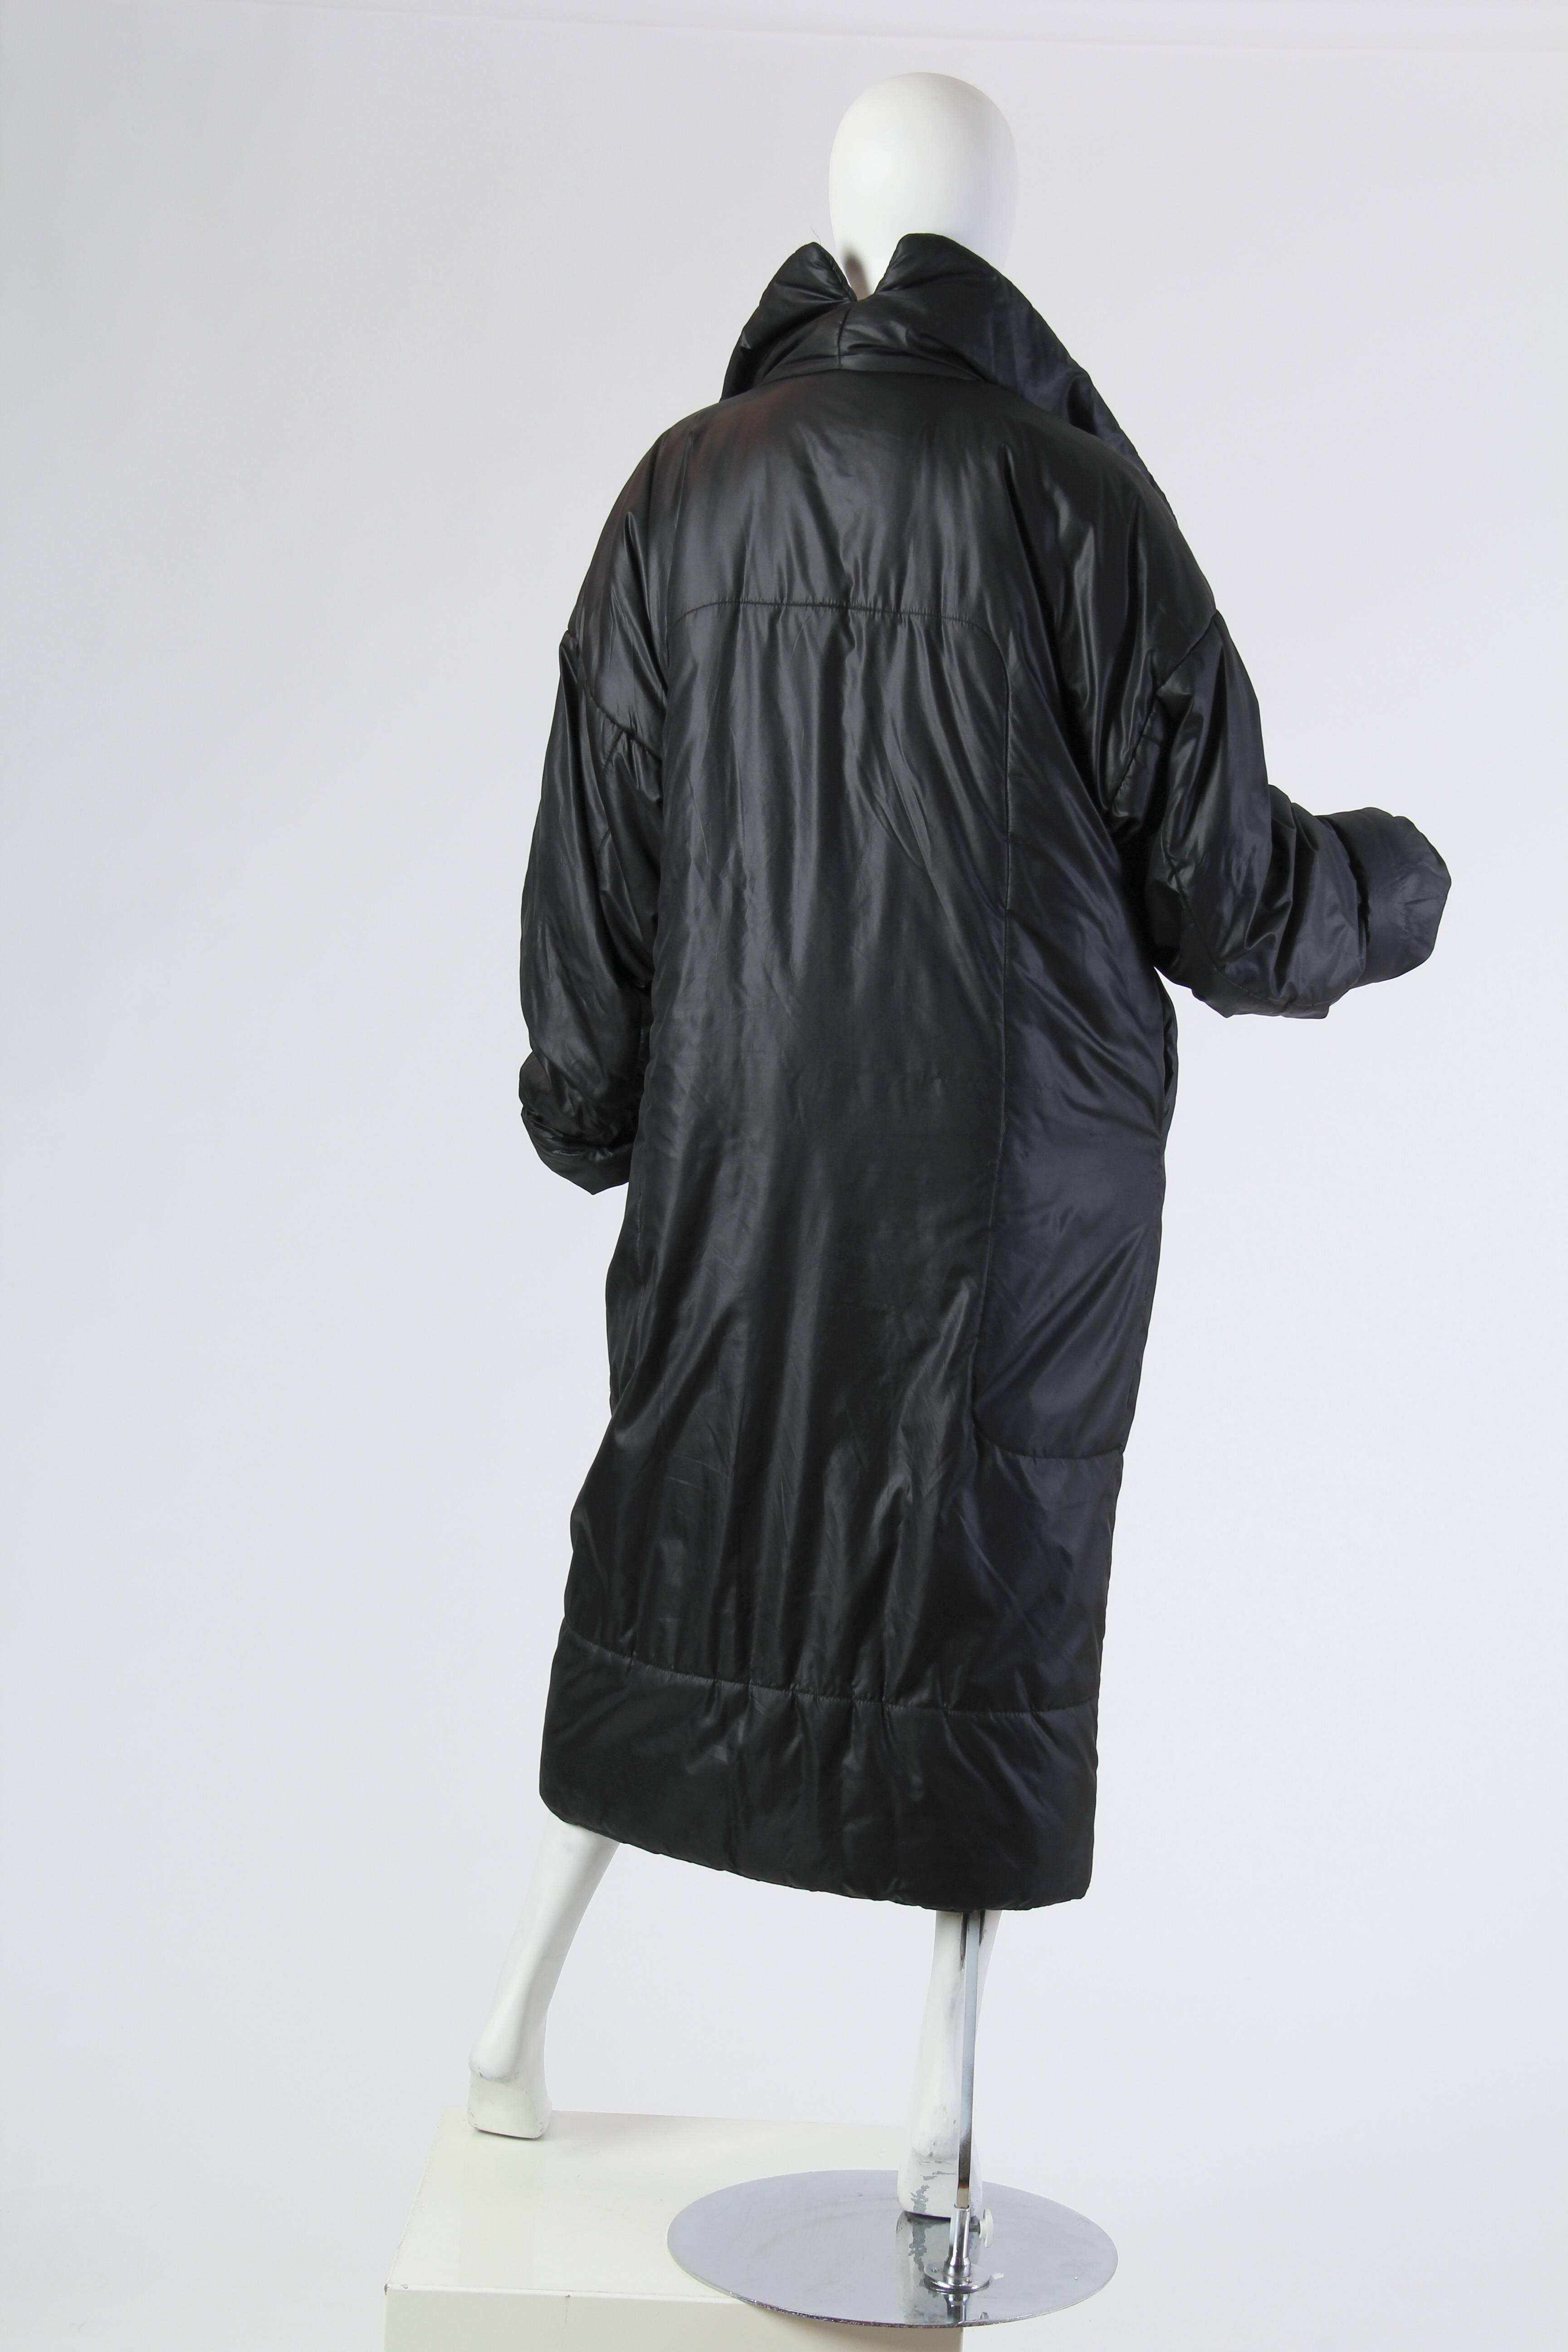 Black Iconic Norma Kamali Sleeping Bag Coat